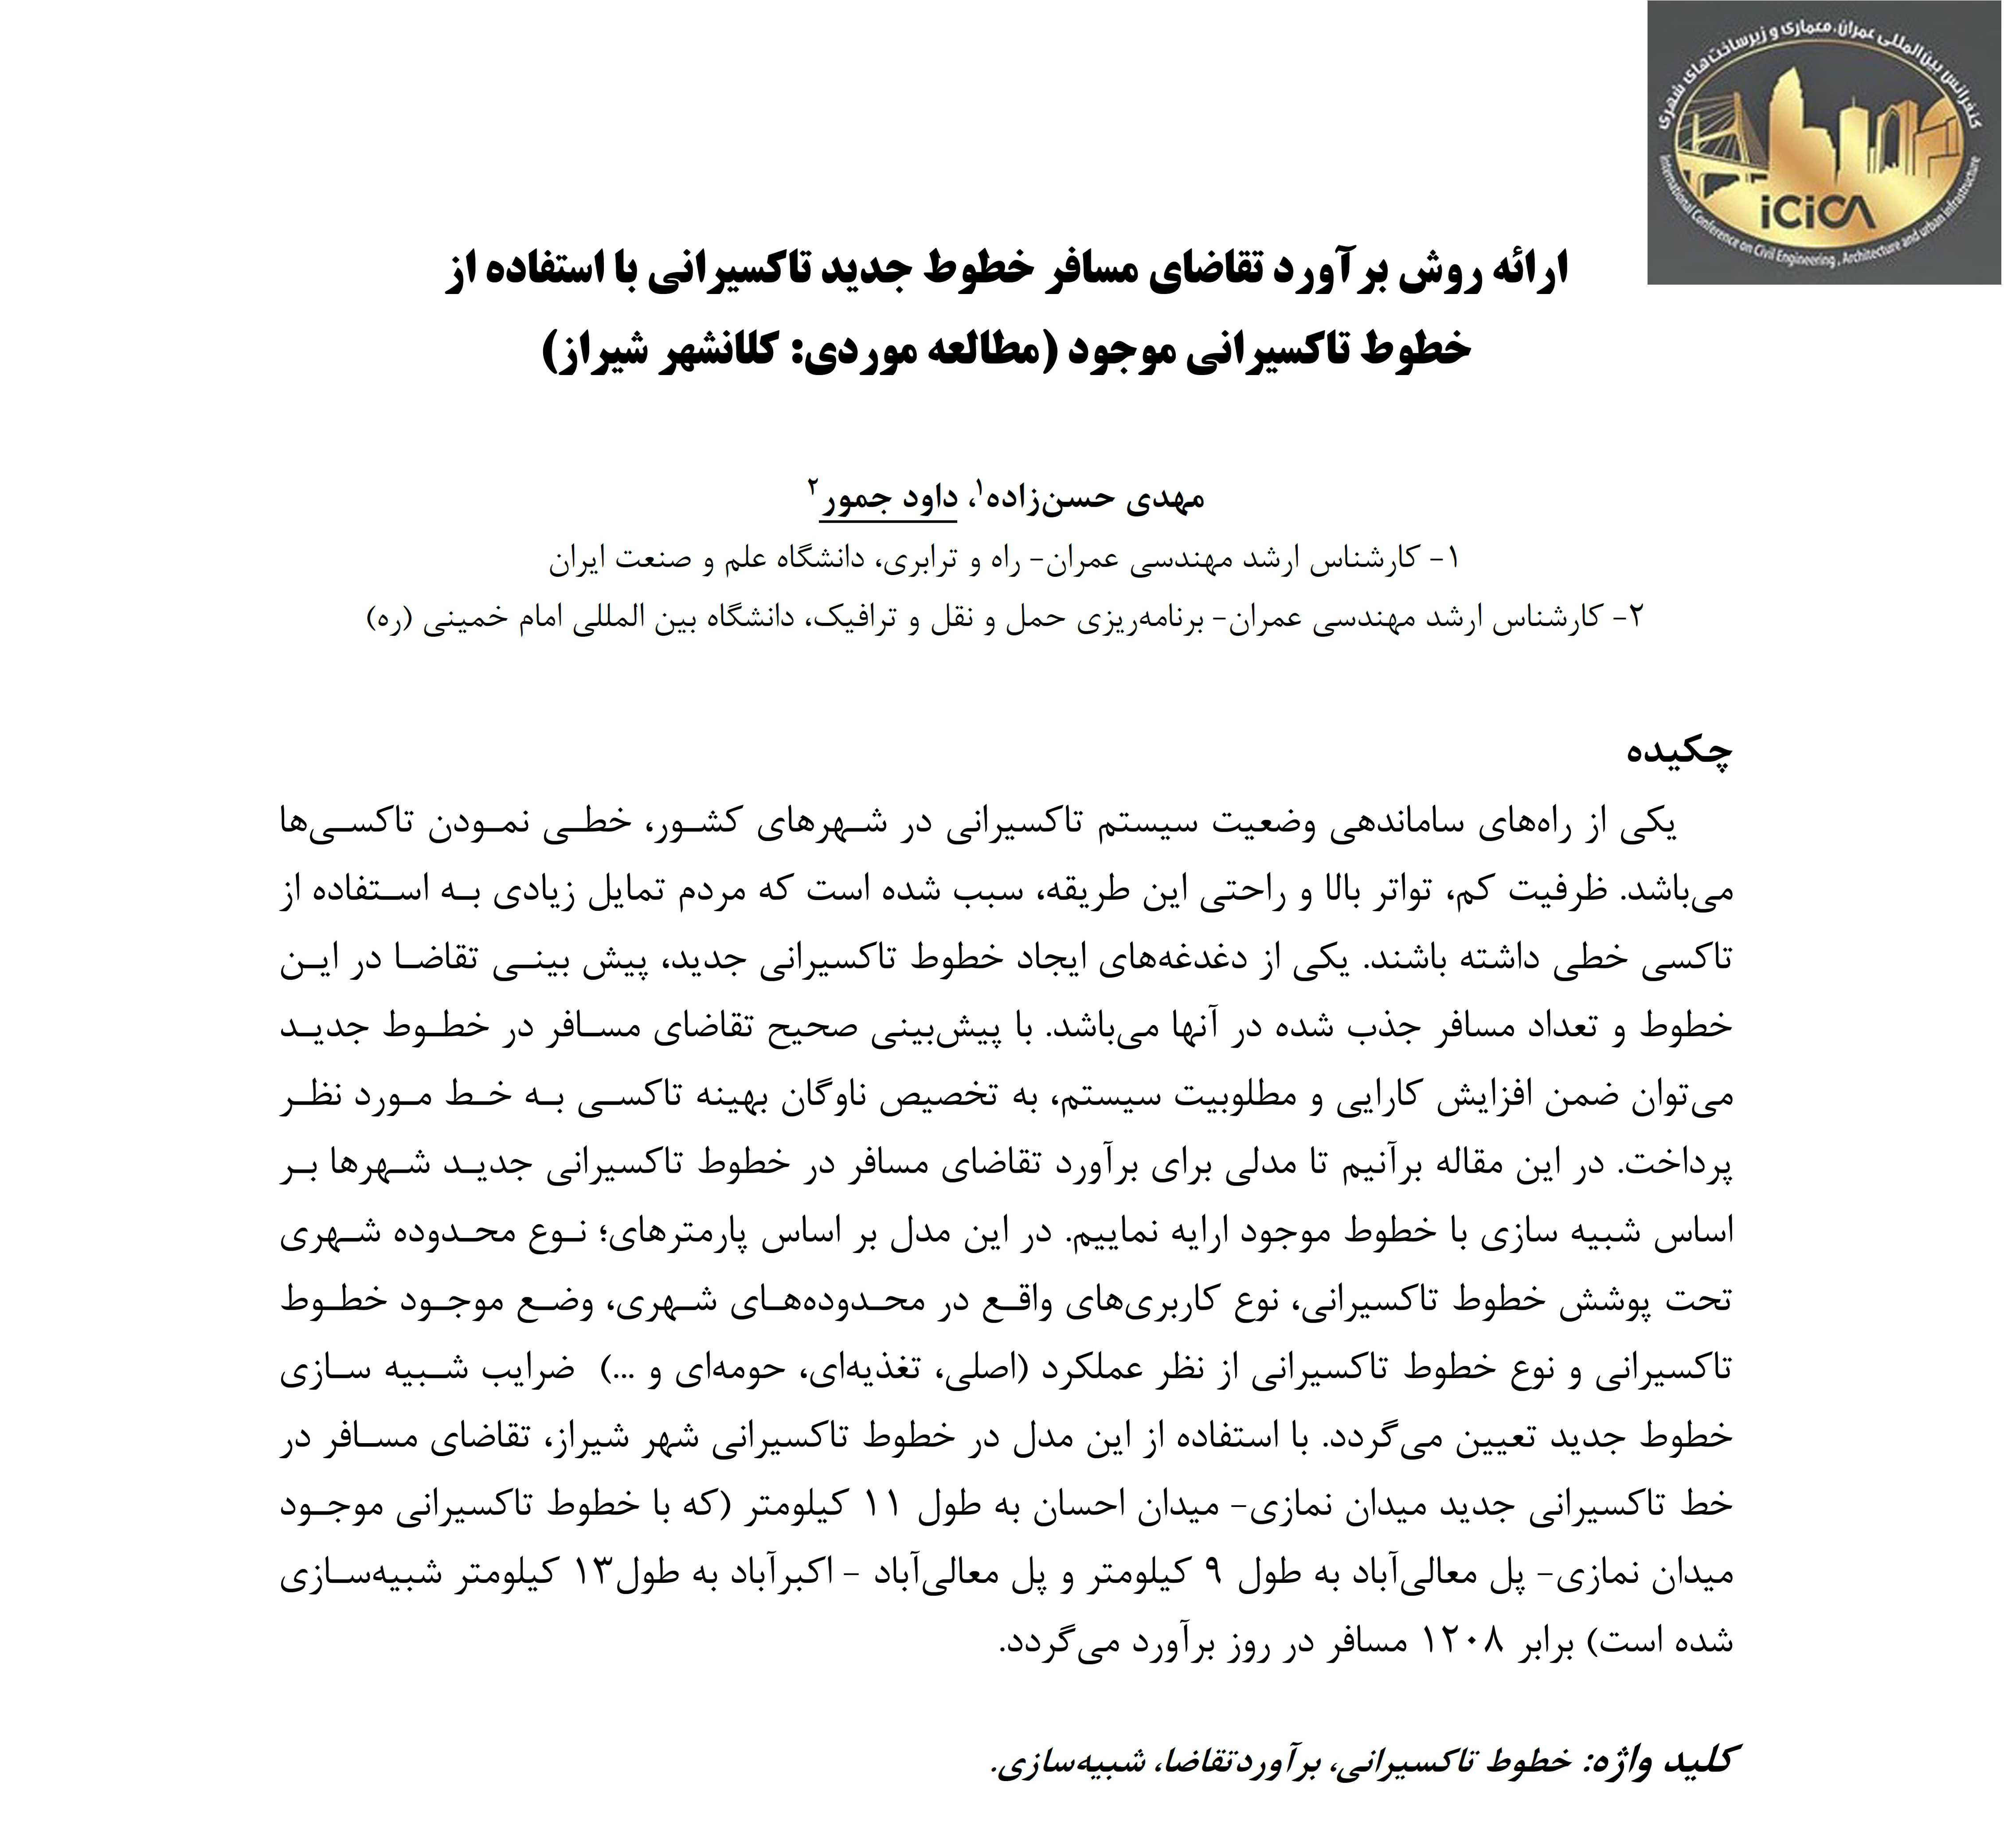 مقاله: ارائه روش برآورد تقاضای مسافر خطوط جدید تاکسیرانی با استفاده از خطوط تاکسیرانی موجود (مطالعه موردی : کلانشهر شیراز) 